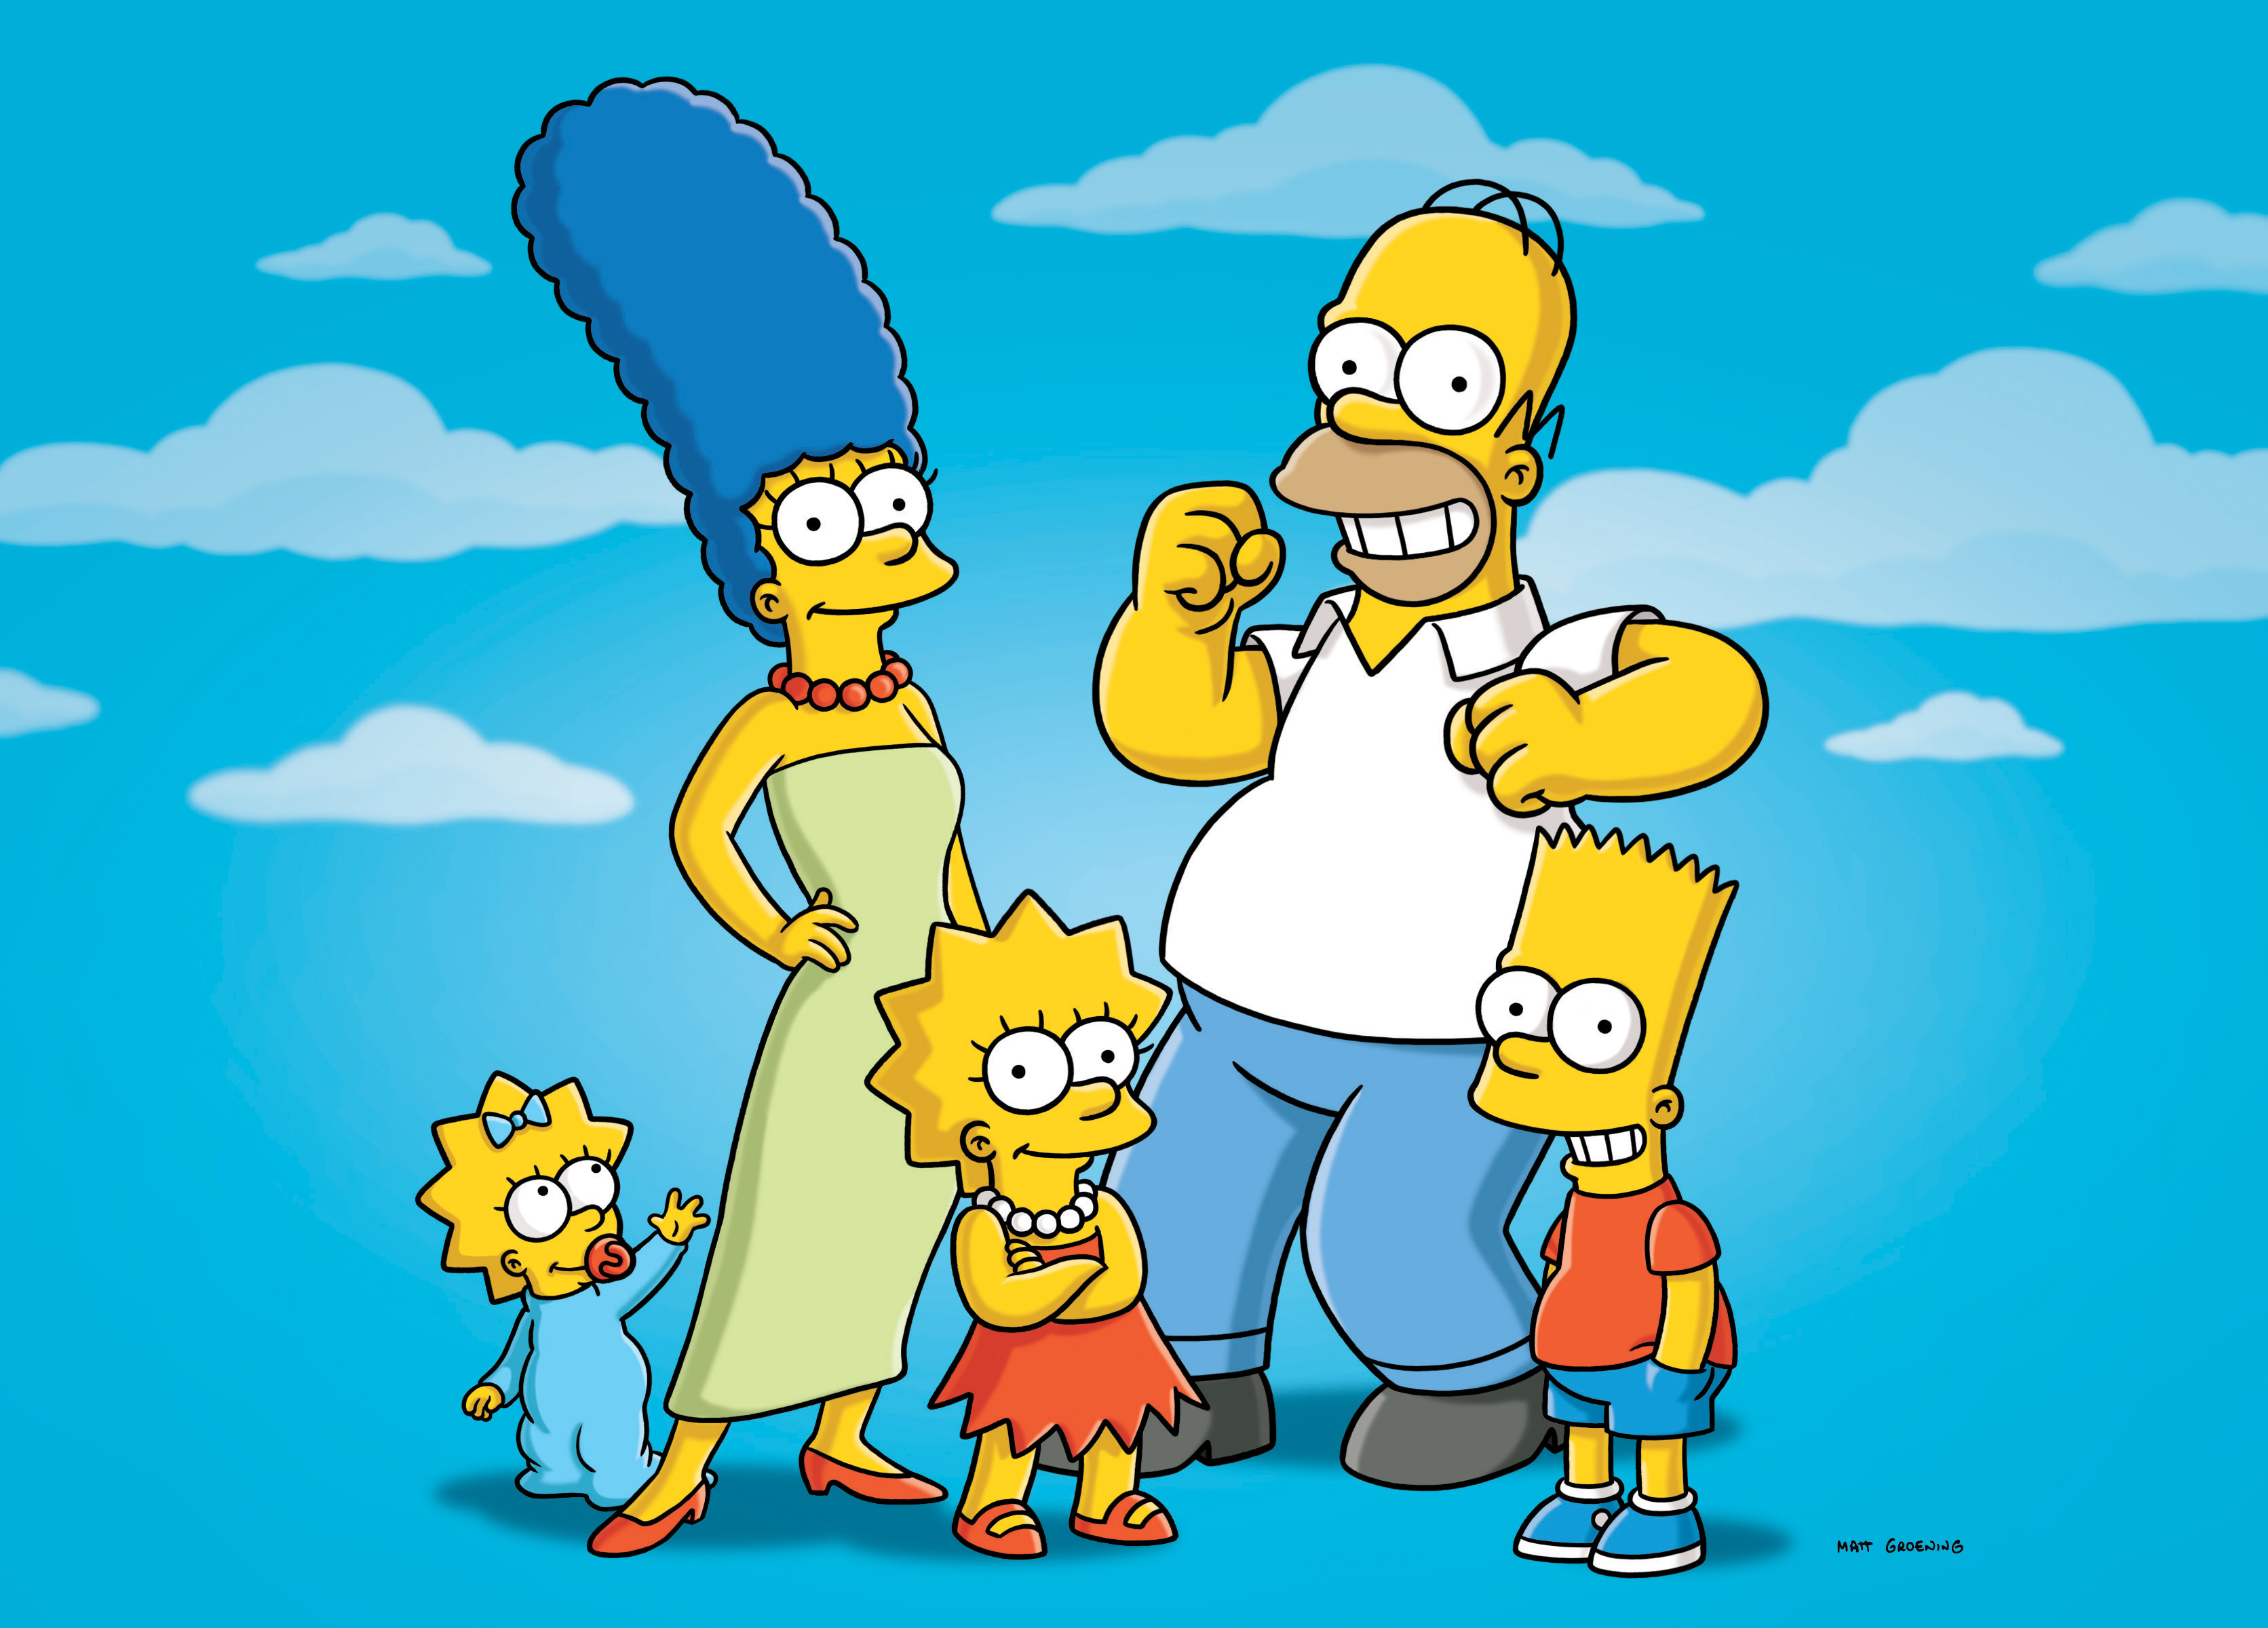 Öl, Bira, Homer, The Simpsons, bärs